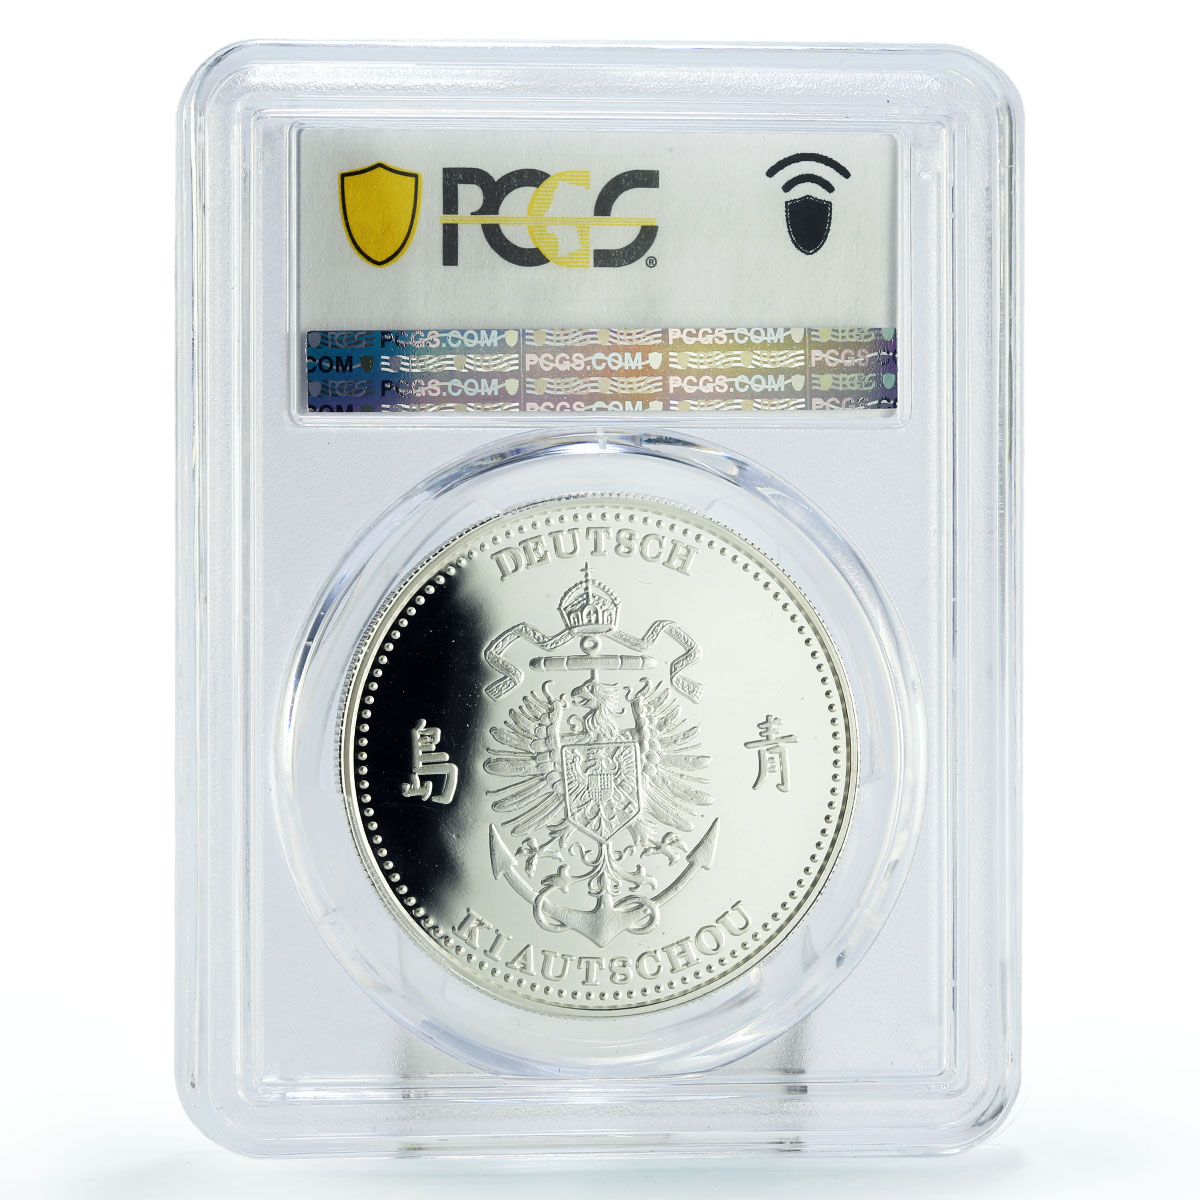 Palau 5 $ International Coins German Kiau Chau KM-20 PR69 PCGS silver coin 1999